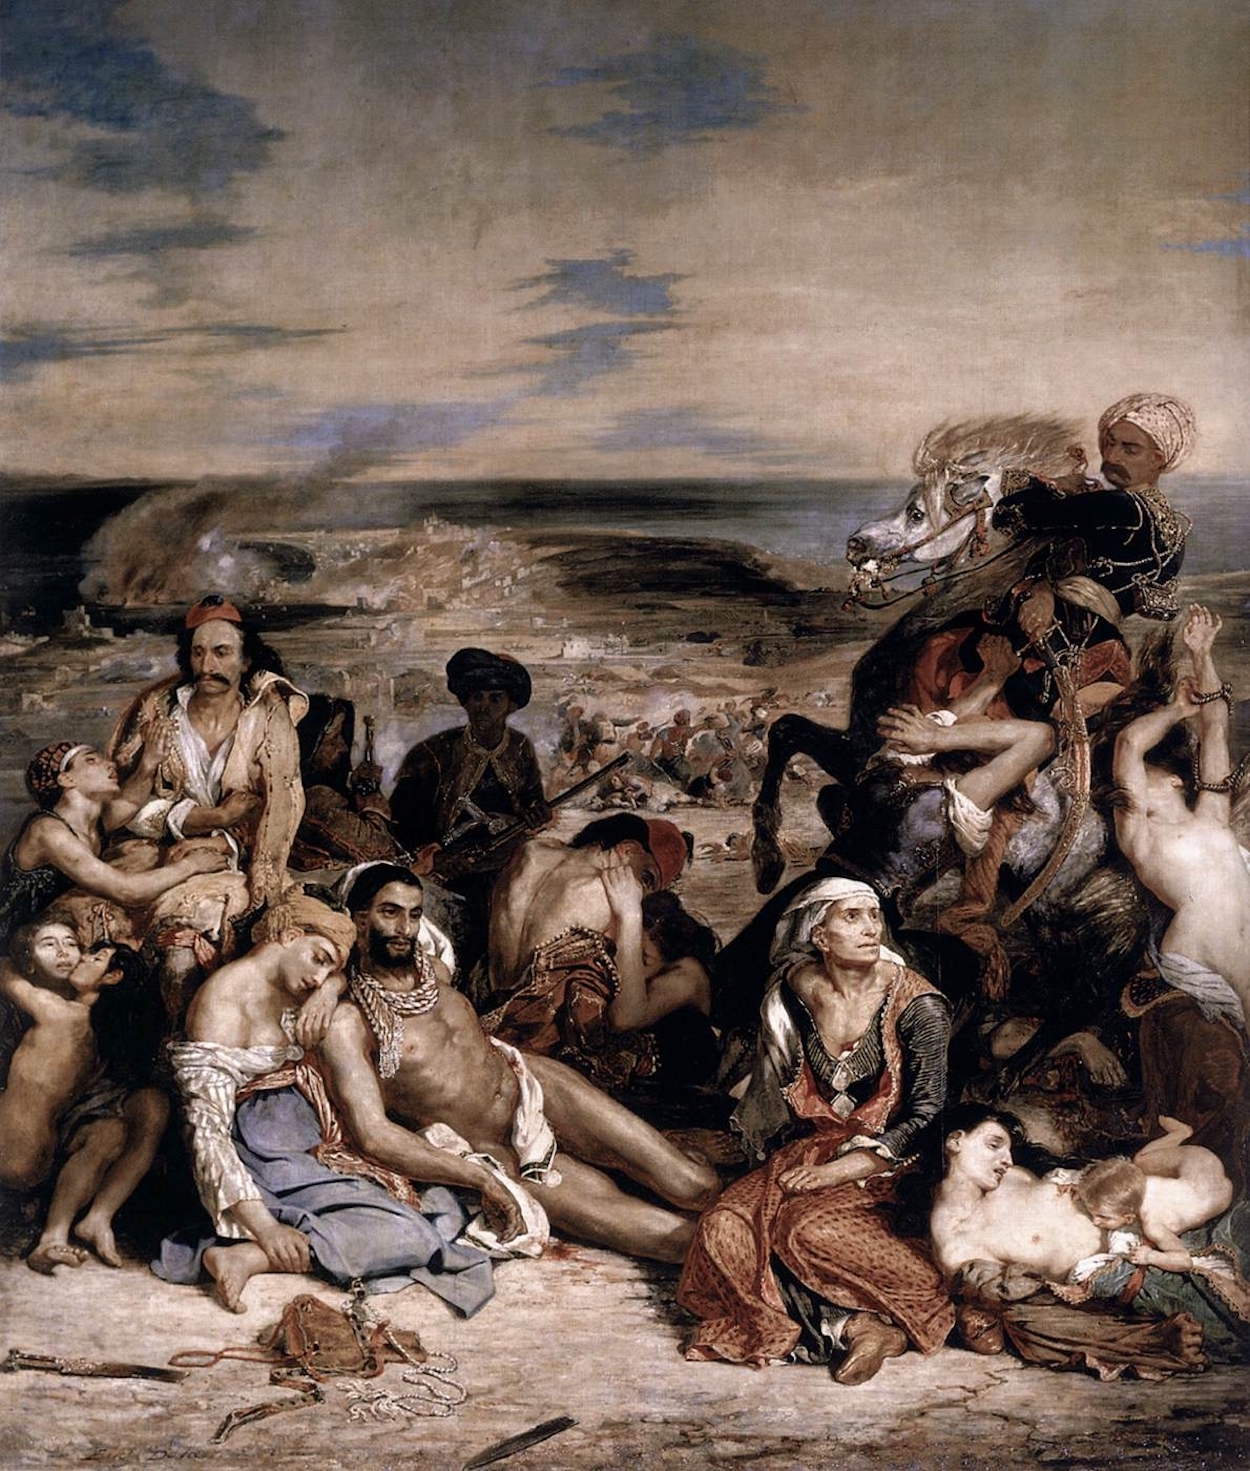 La masacre de Quíos by Eugène Delacroix - 1824 - 419 cm × 354 cm Musée du Louvre